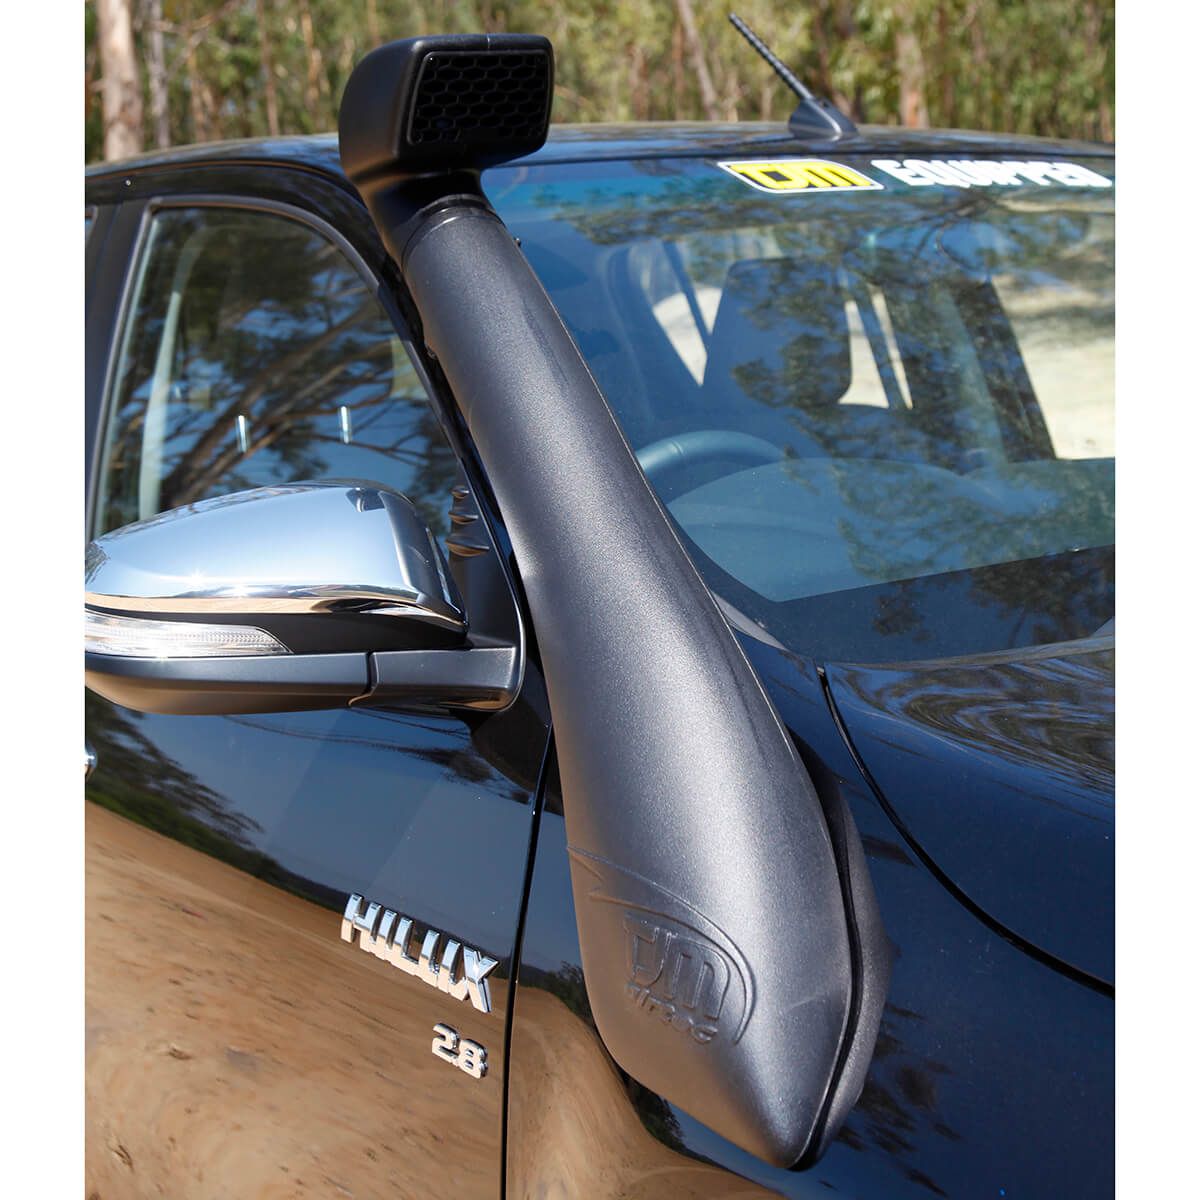 Bộ ống thở TJM Airtec Polyethylene Đen dành cho Toyota Hilux  2015 +